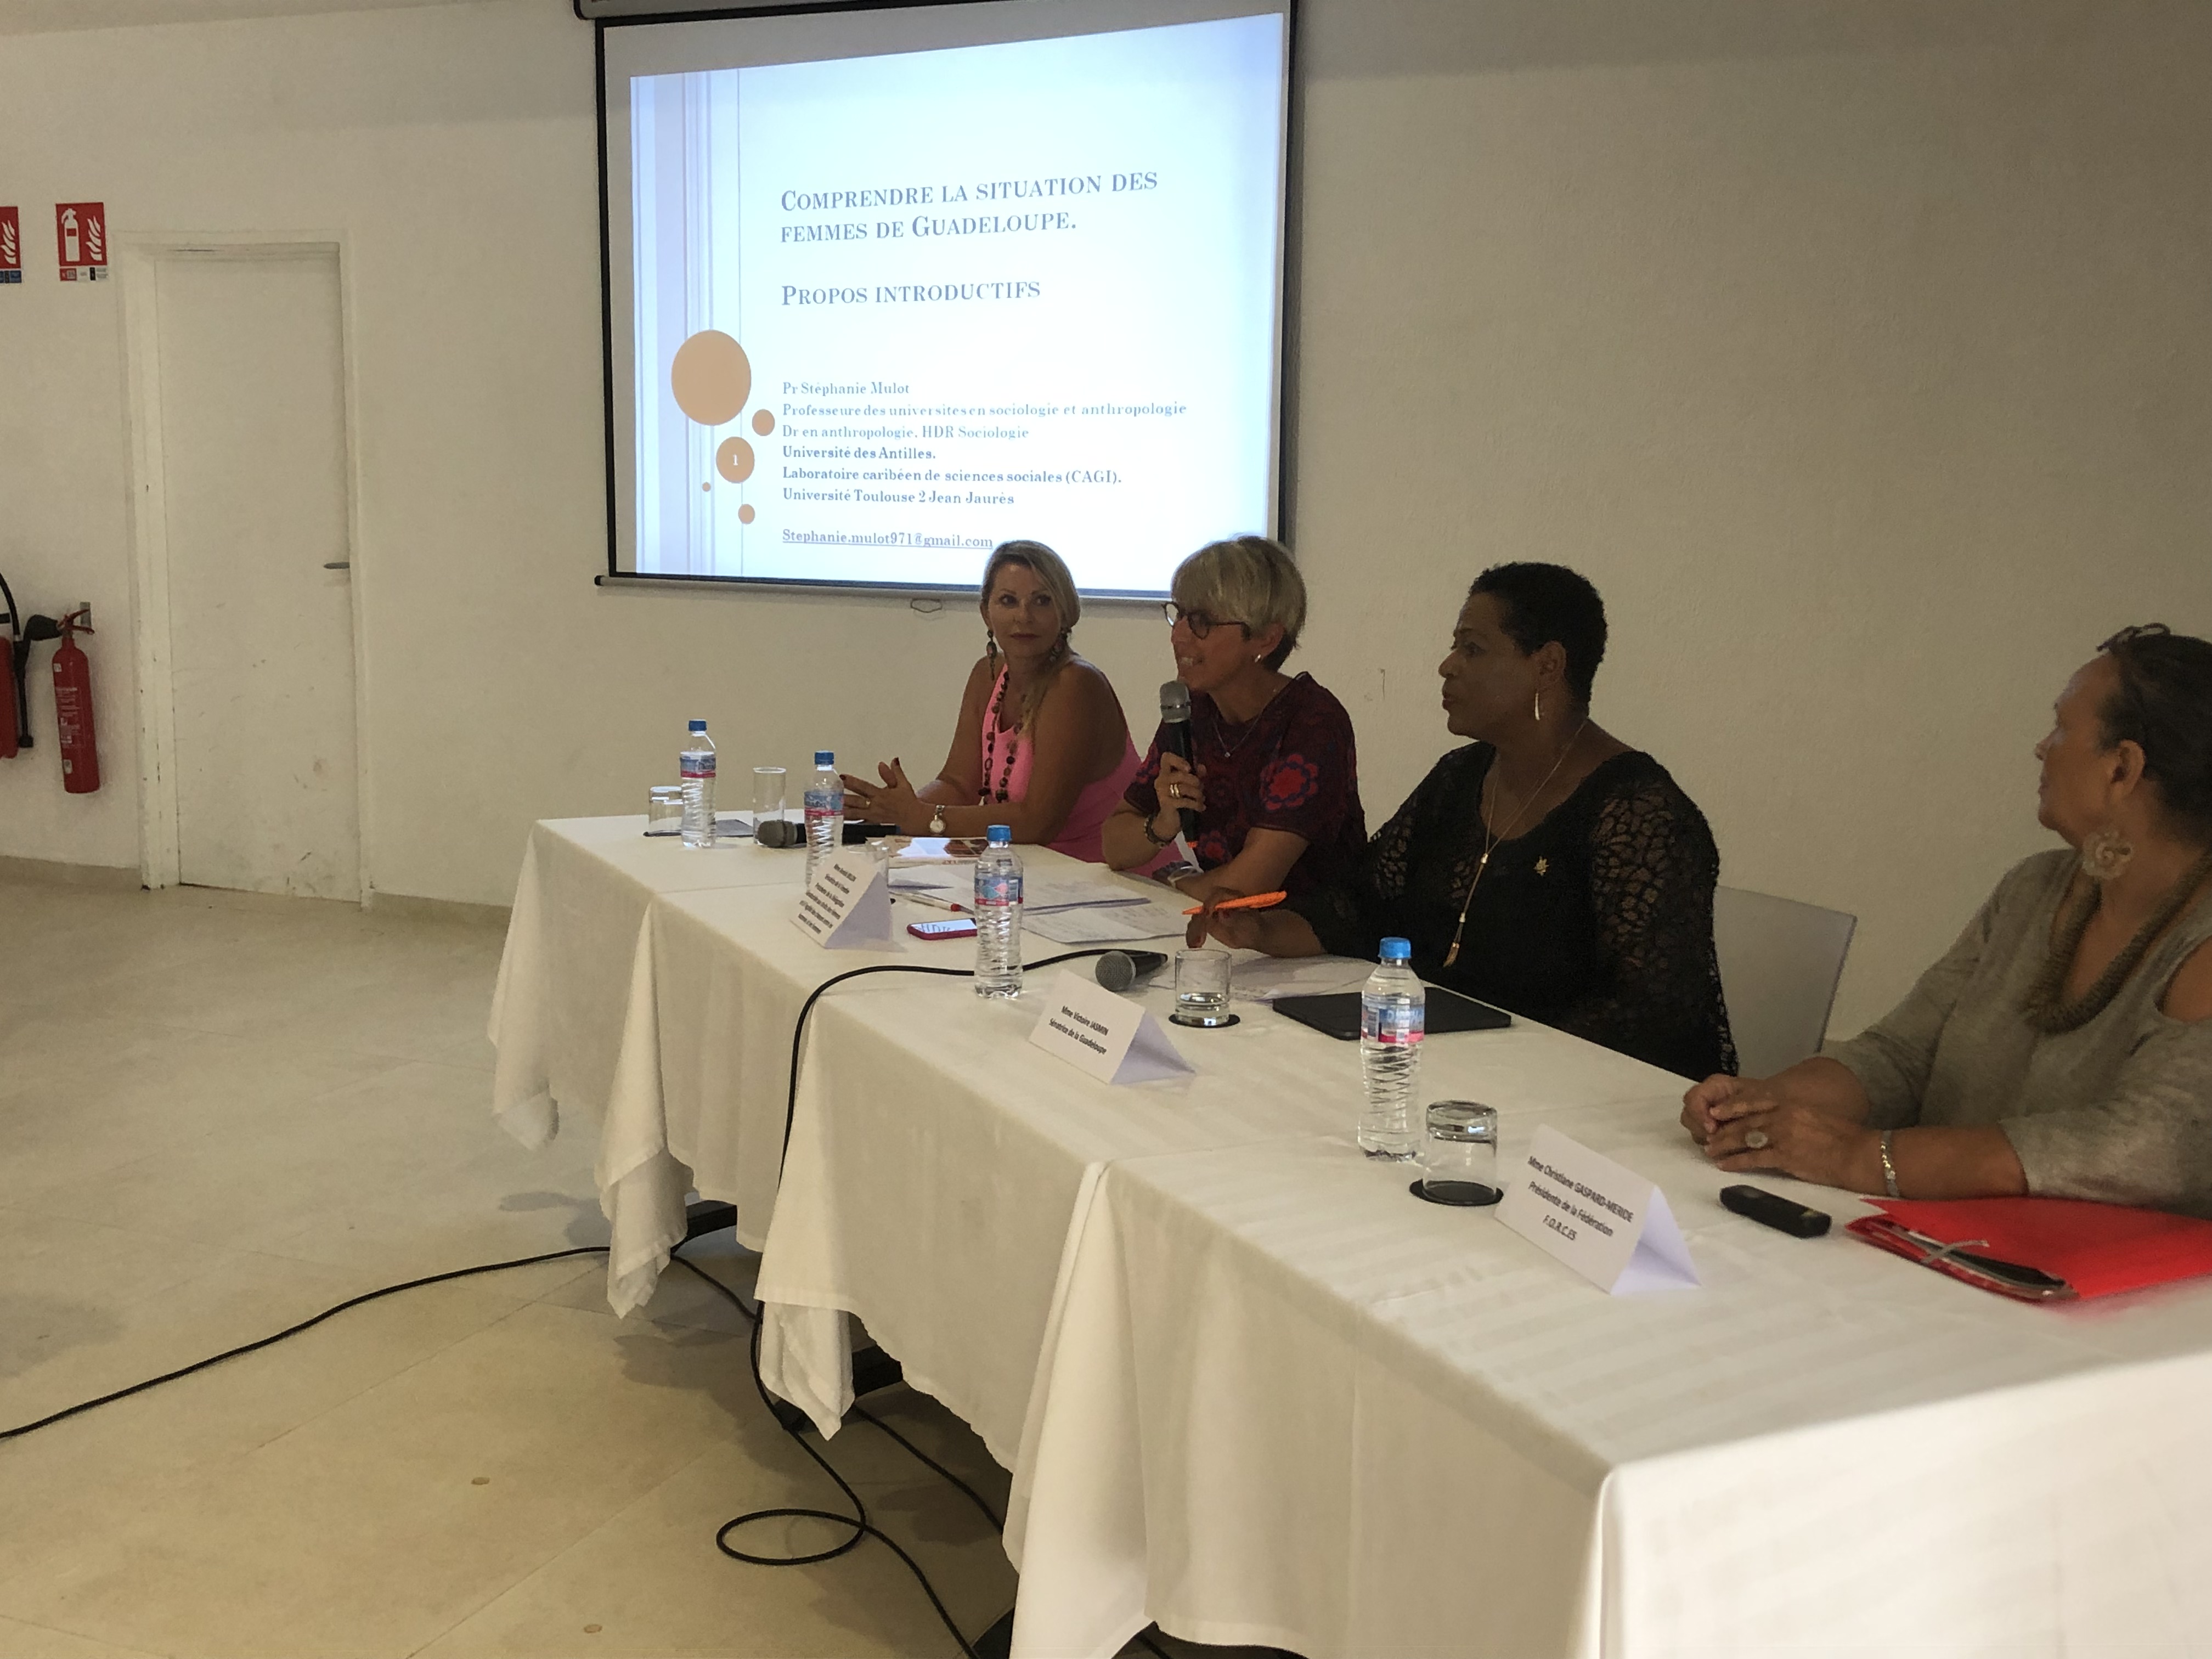     La délégation sénatoriale aux droits des femmes en Guadeloupe

